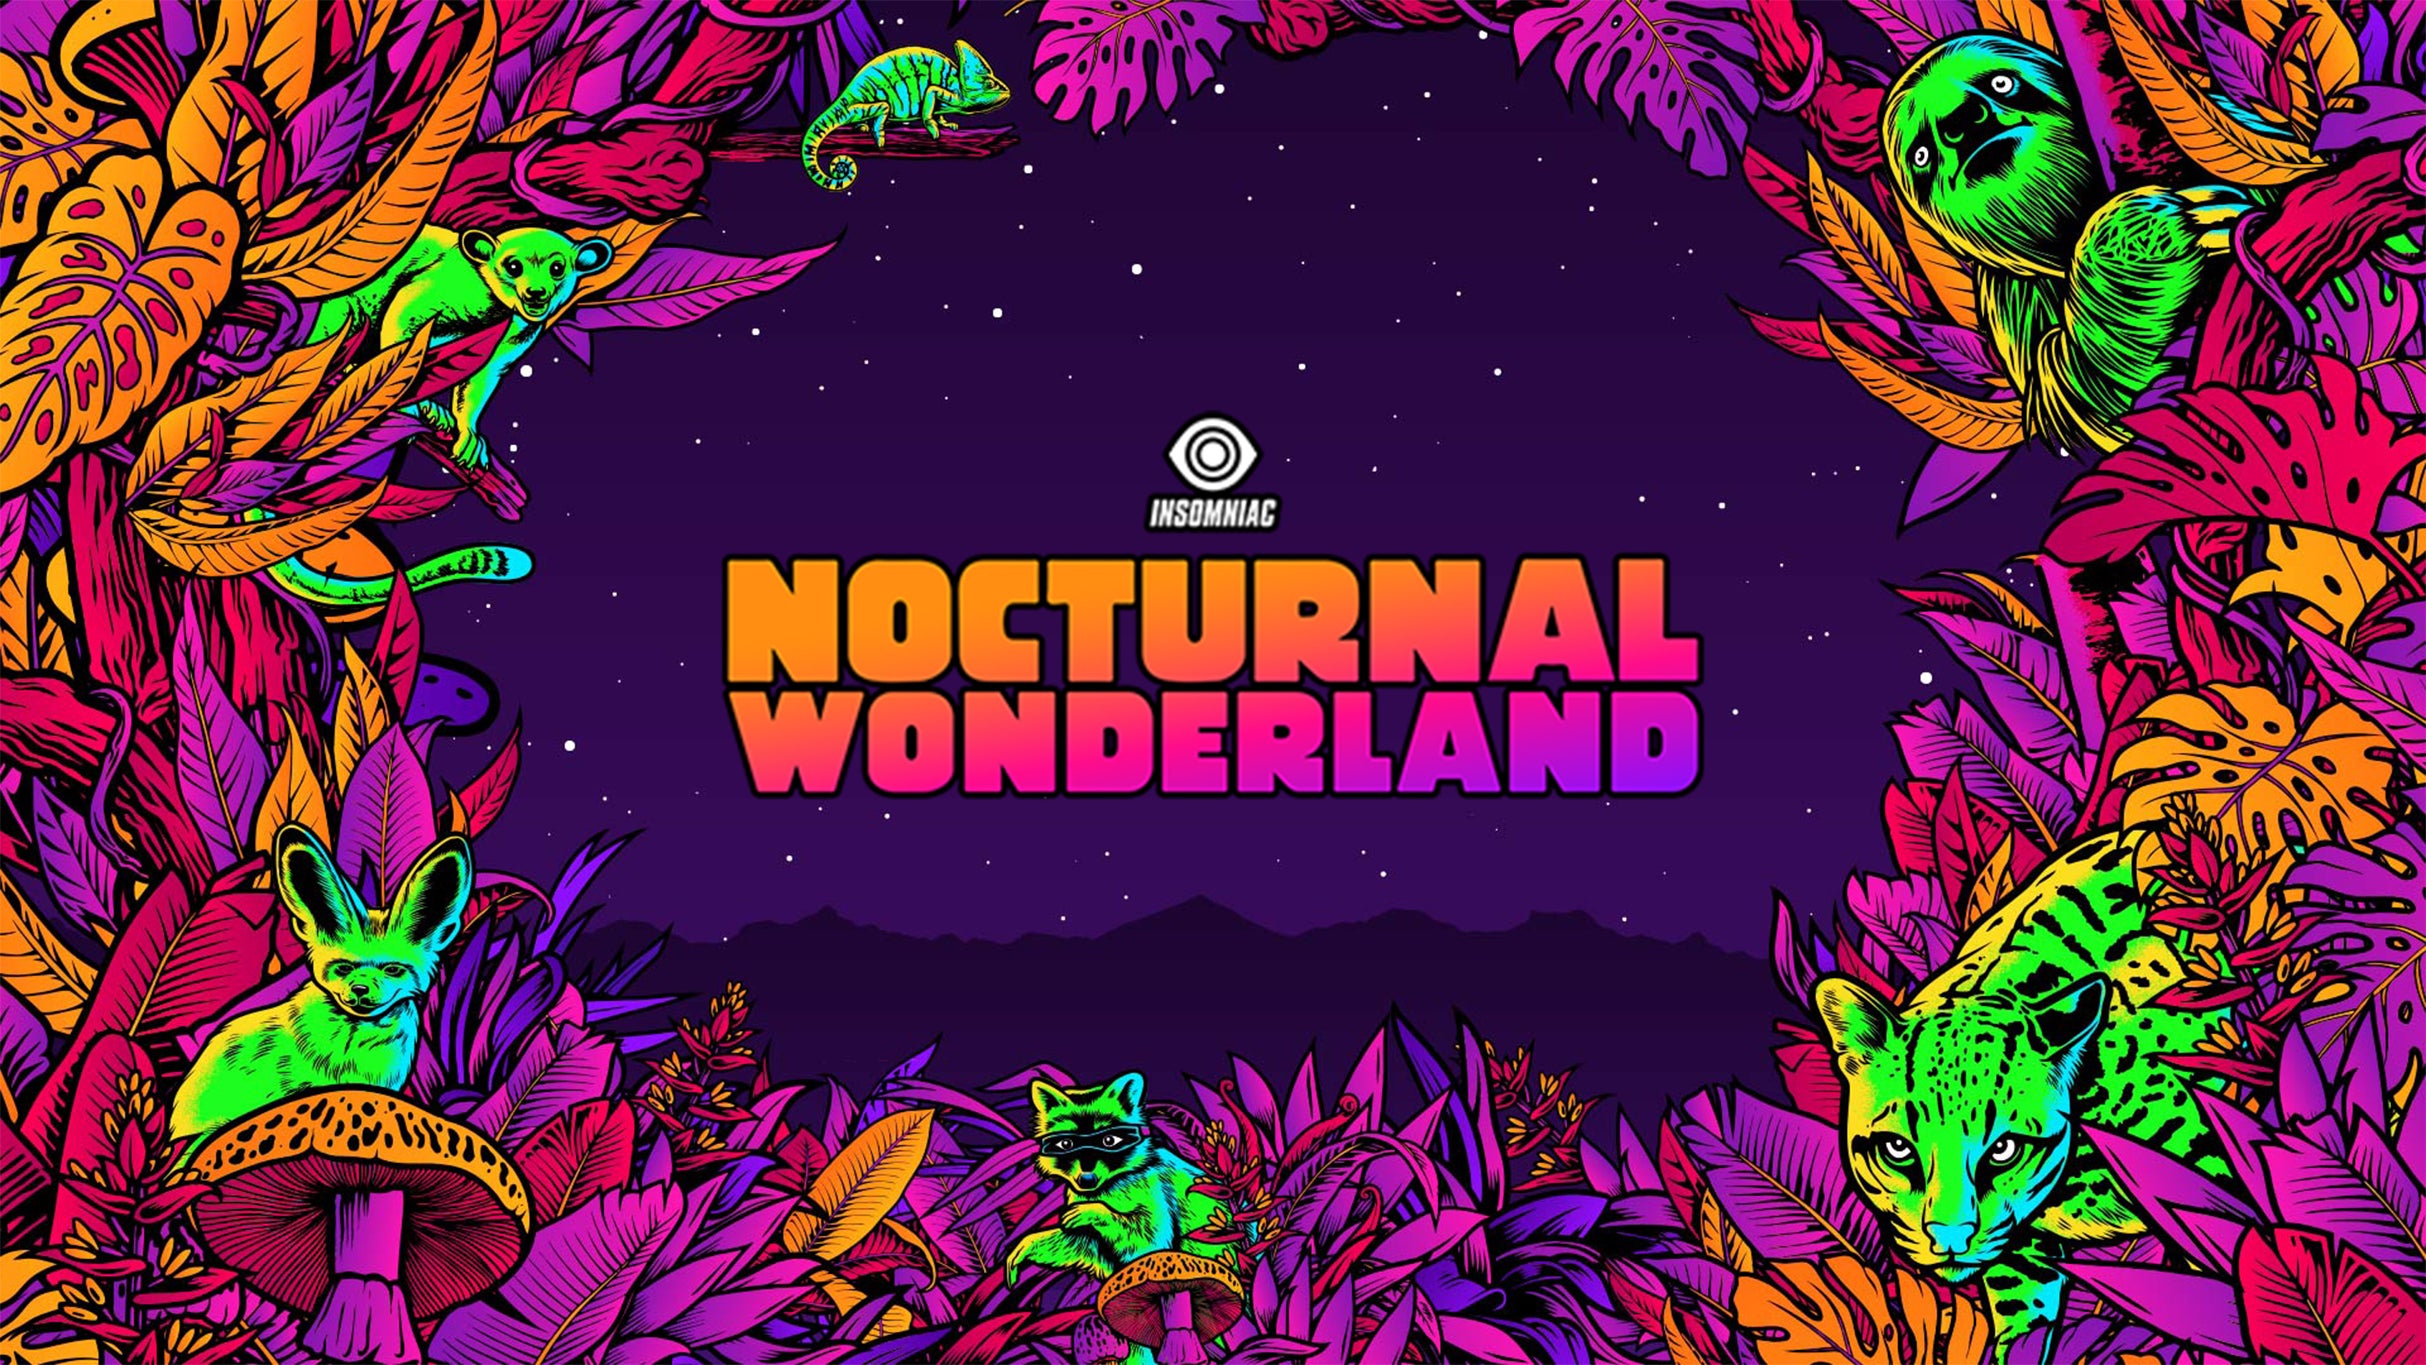 Nocturnal Wonderland at Glen Helen Regional Park